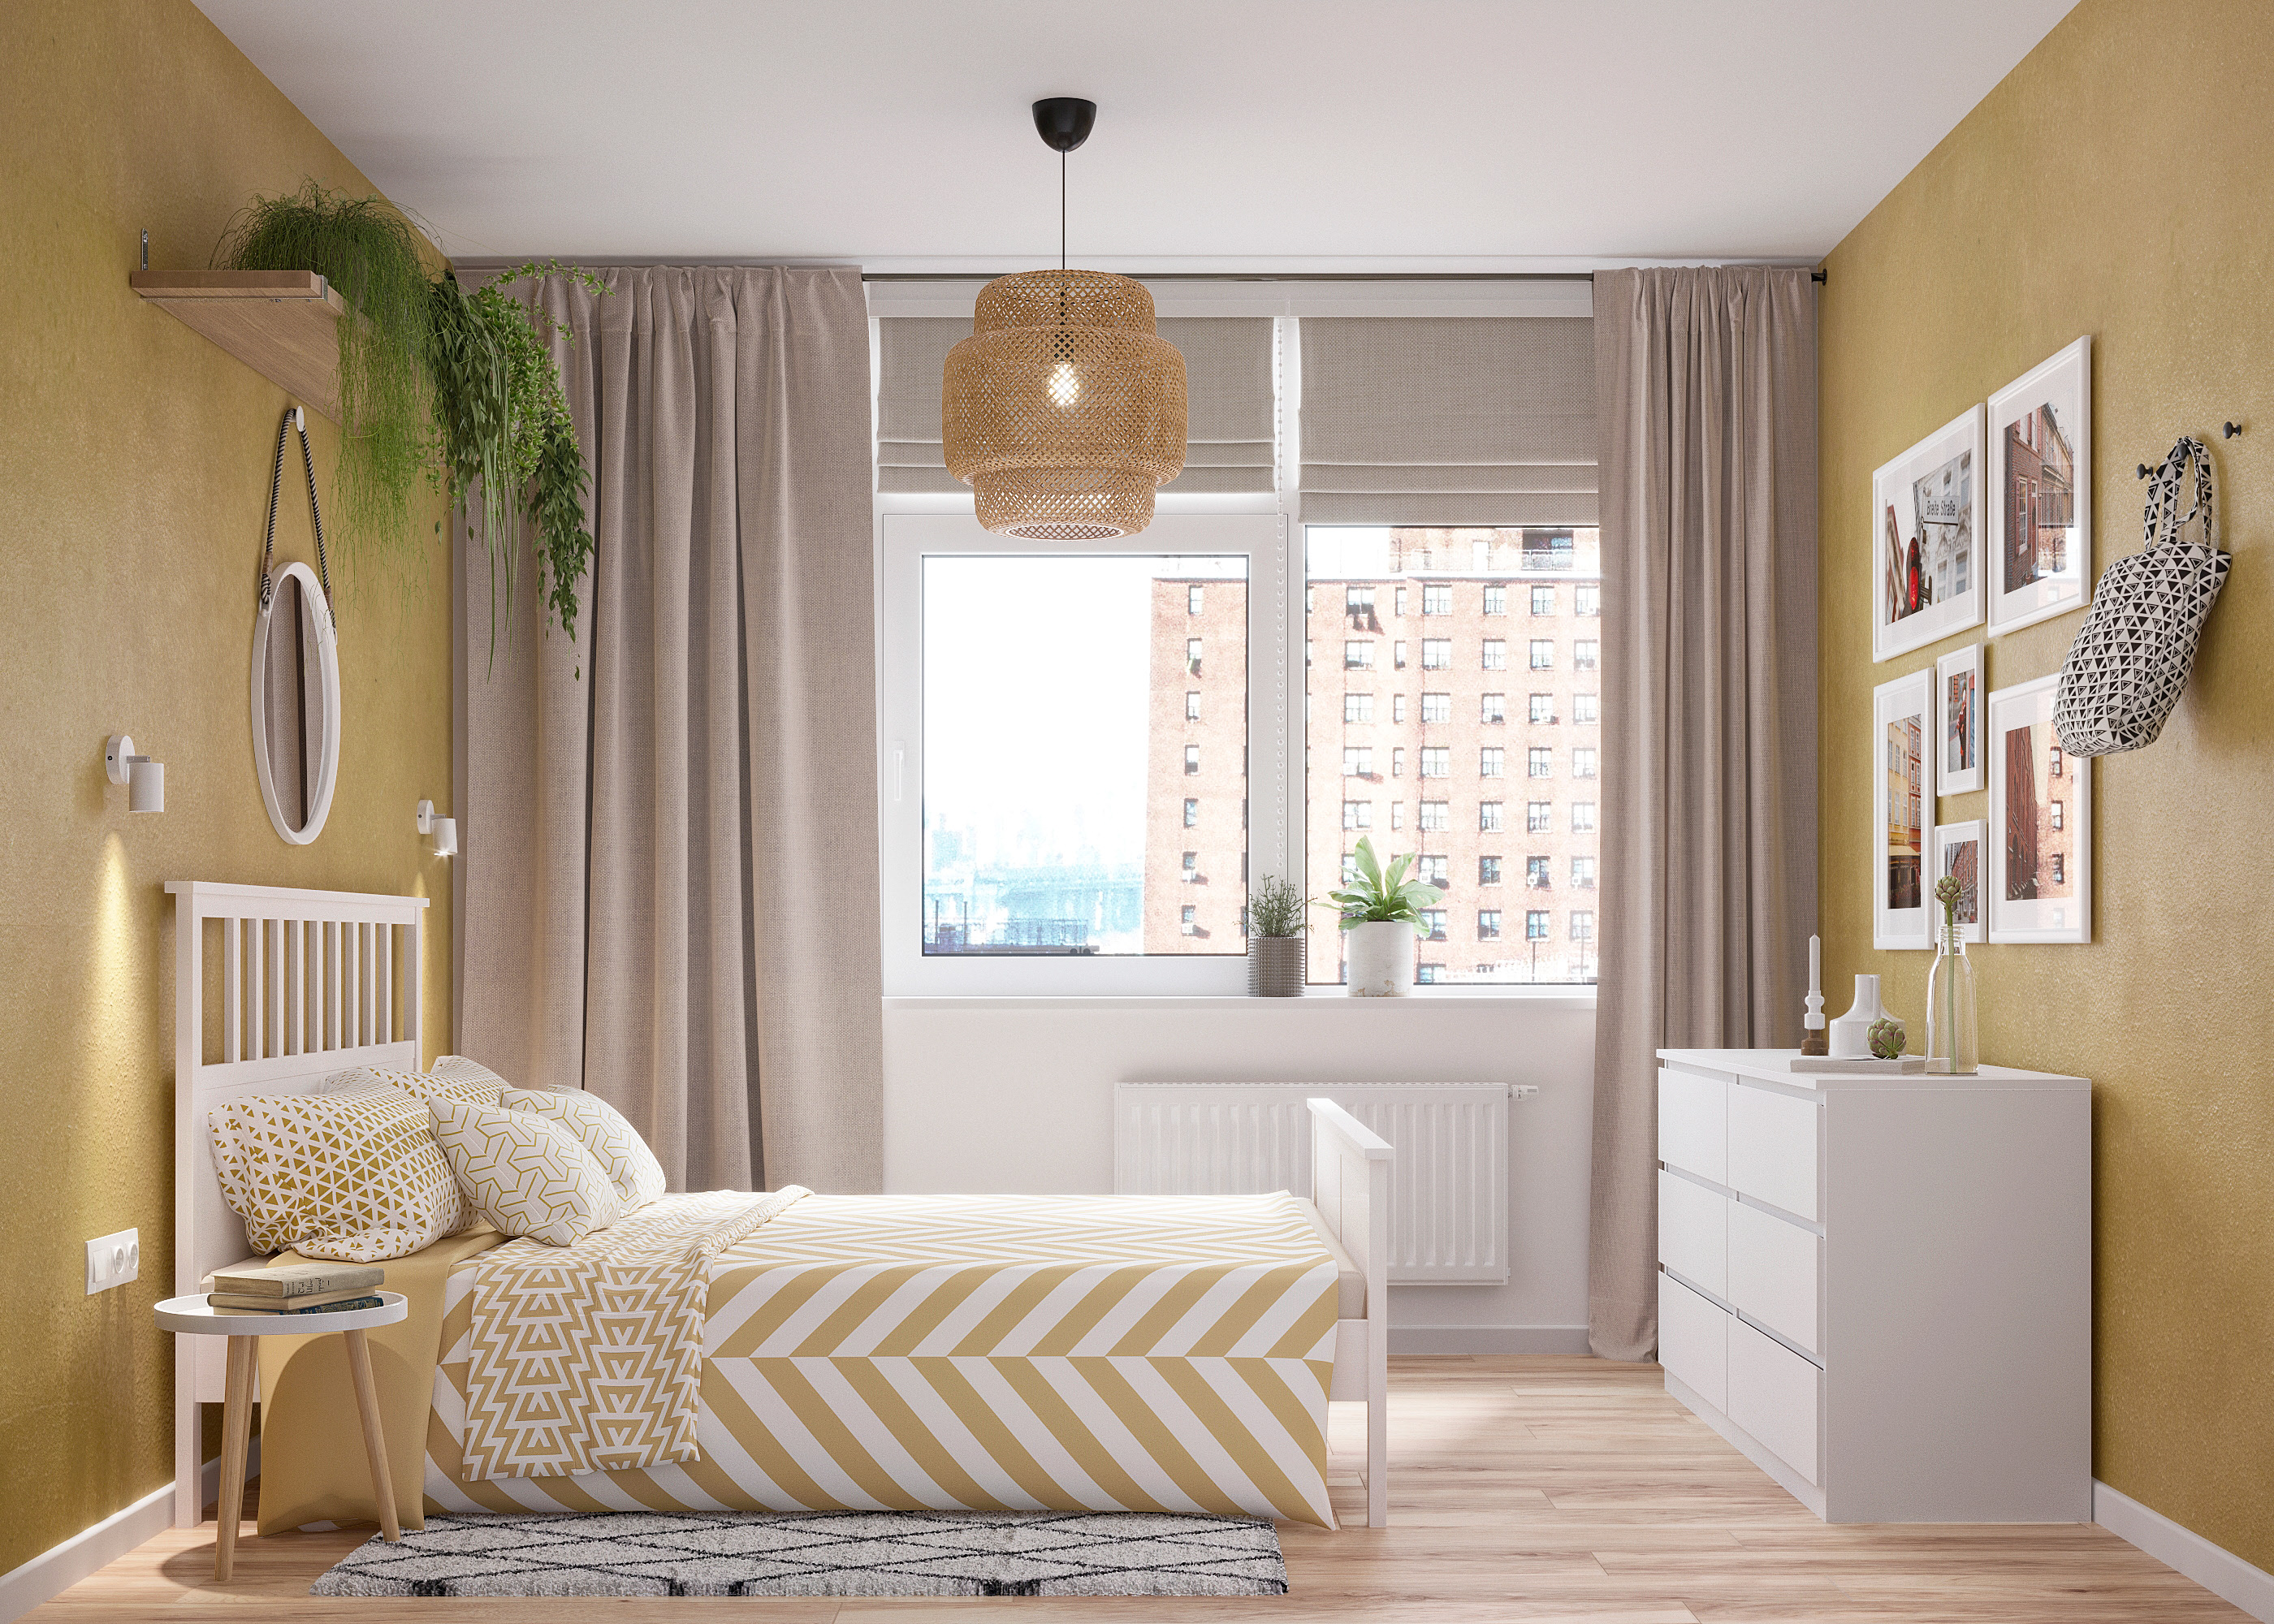 IconP - Thiết kế chung cư căn hộ phong cách Scandinavian, phong cách Bắc Âu Ấn tượng, gam màu vàng phóng khoáng